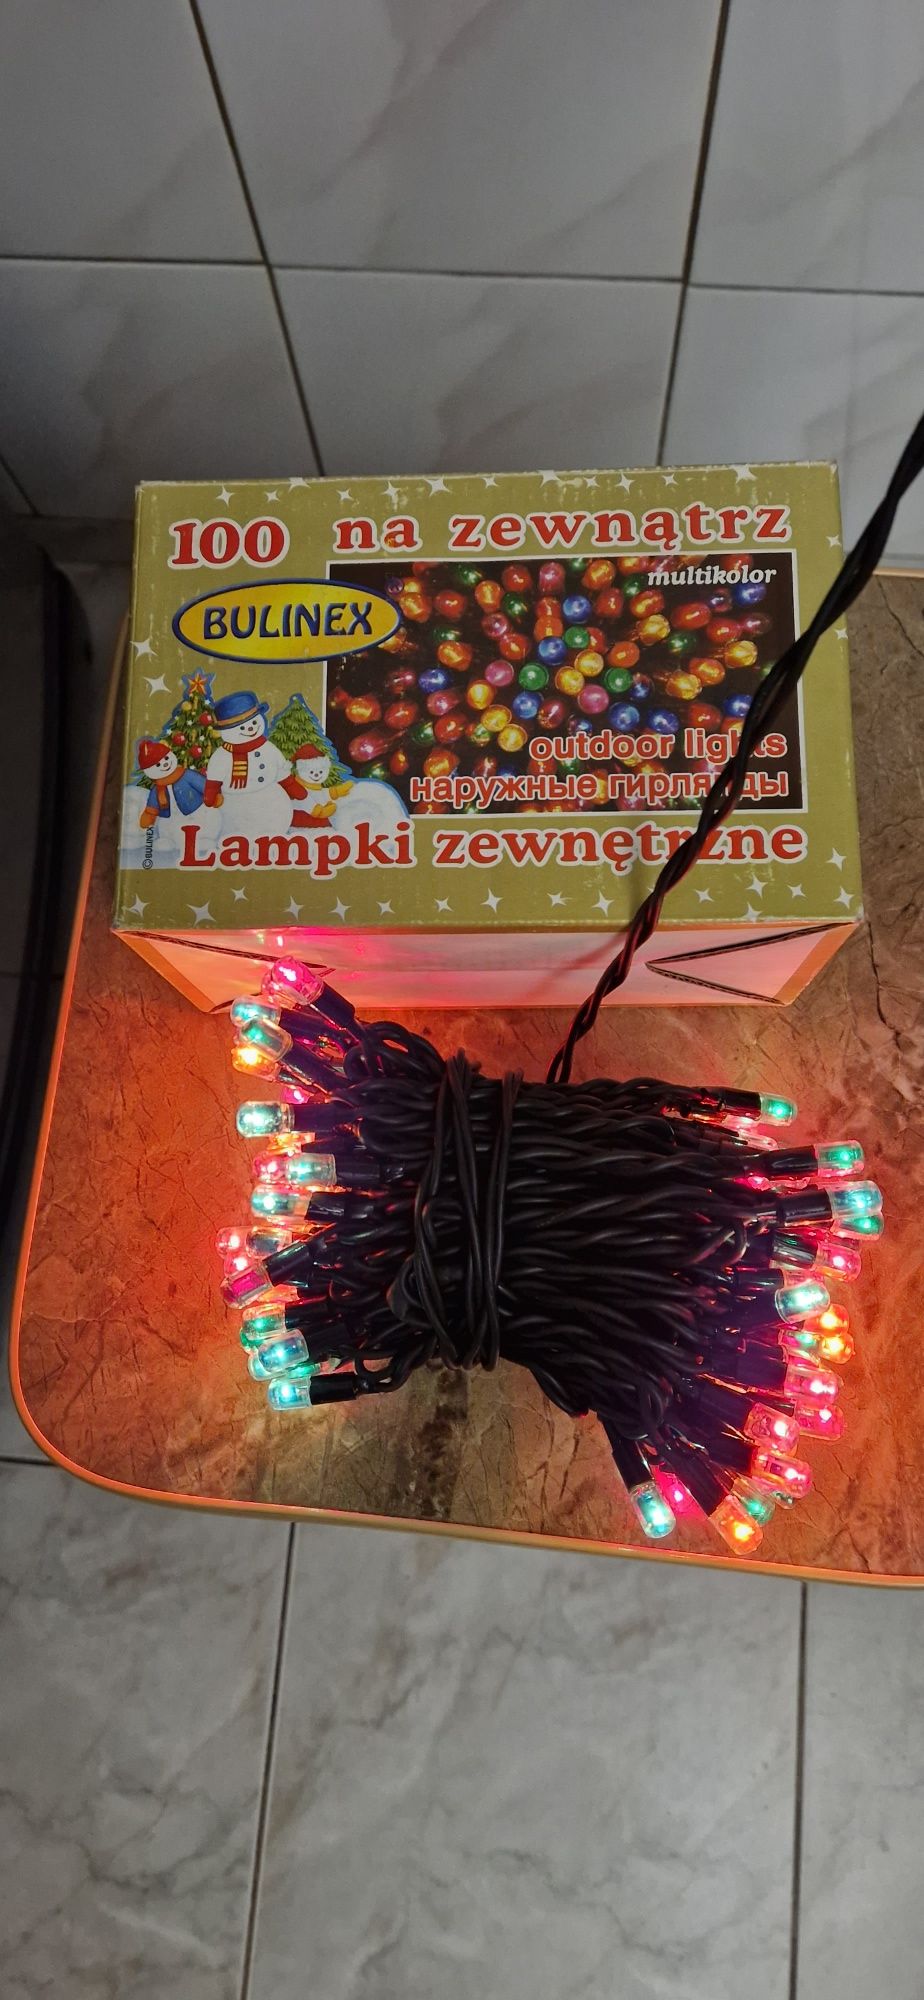 Lampki zewnętrzne Bulinex 100